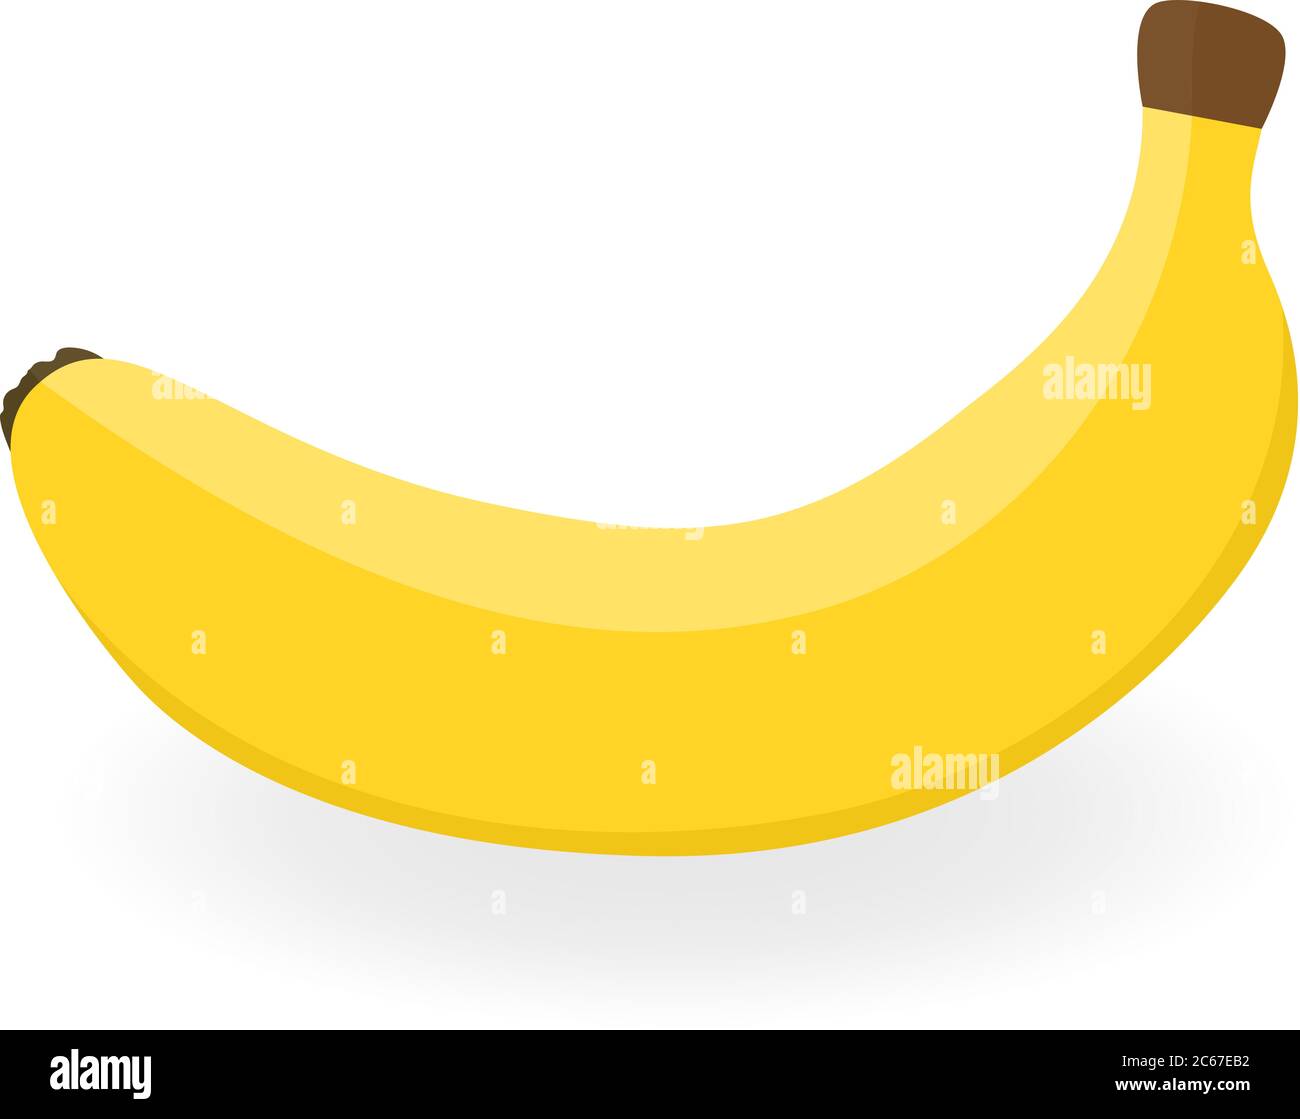 Bananenvektor. Abbildung mit Früchten. Frische gelbe Banane isoliert auf weißem Hintergrund. Öko-Lebensmittel. Für Website-Design, mobile App. Logo-Abbildung. Stock Vektor